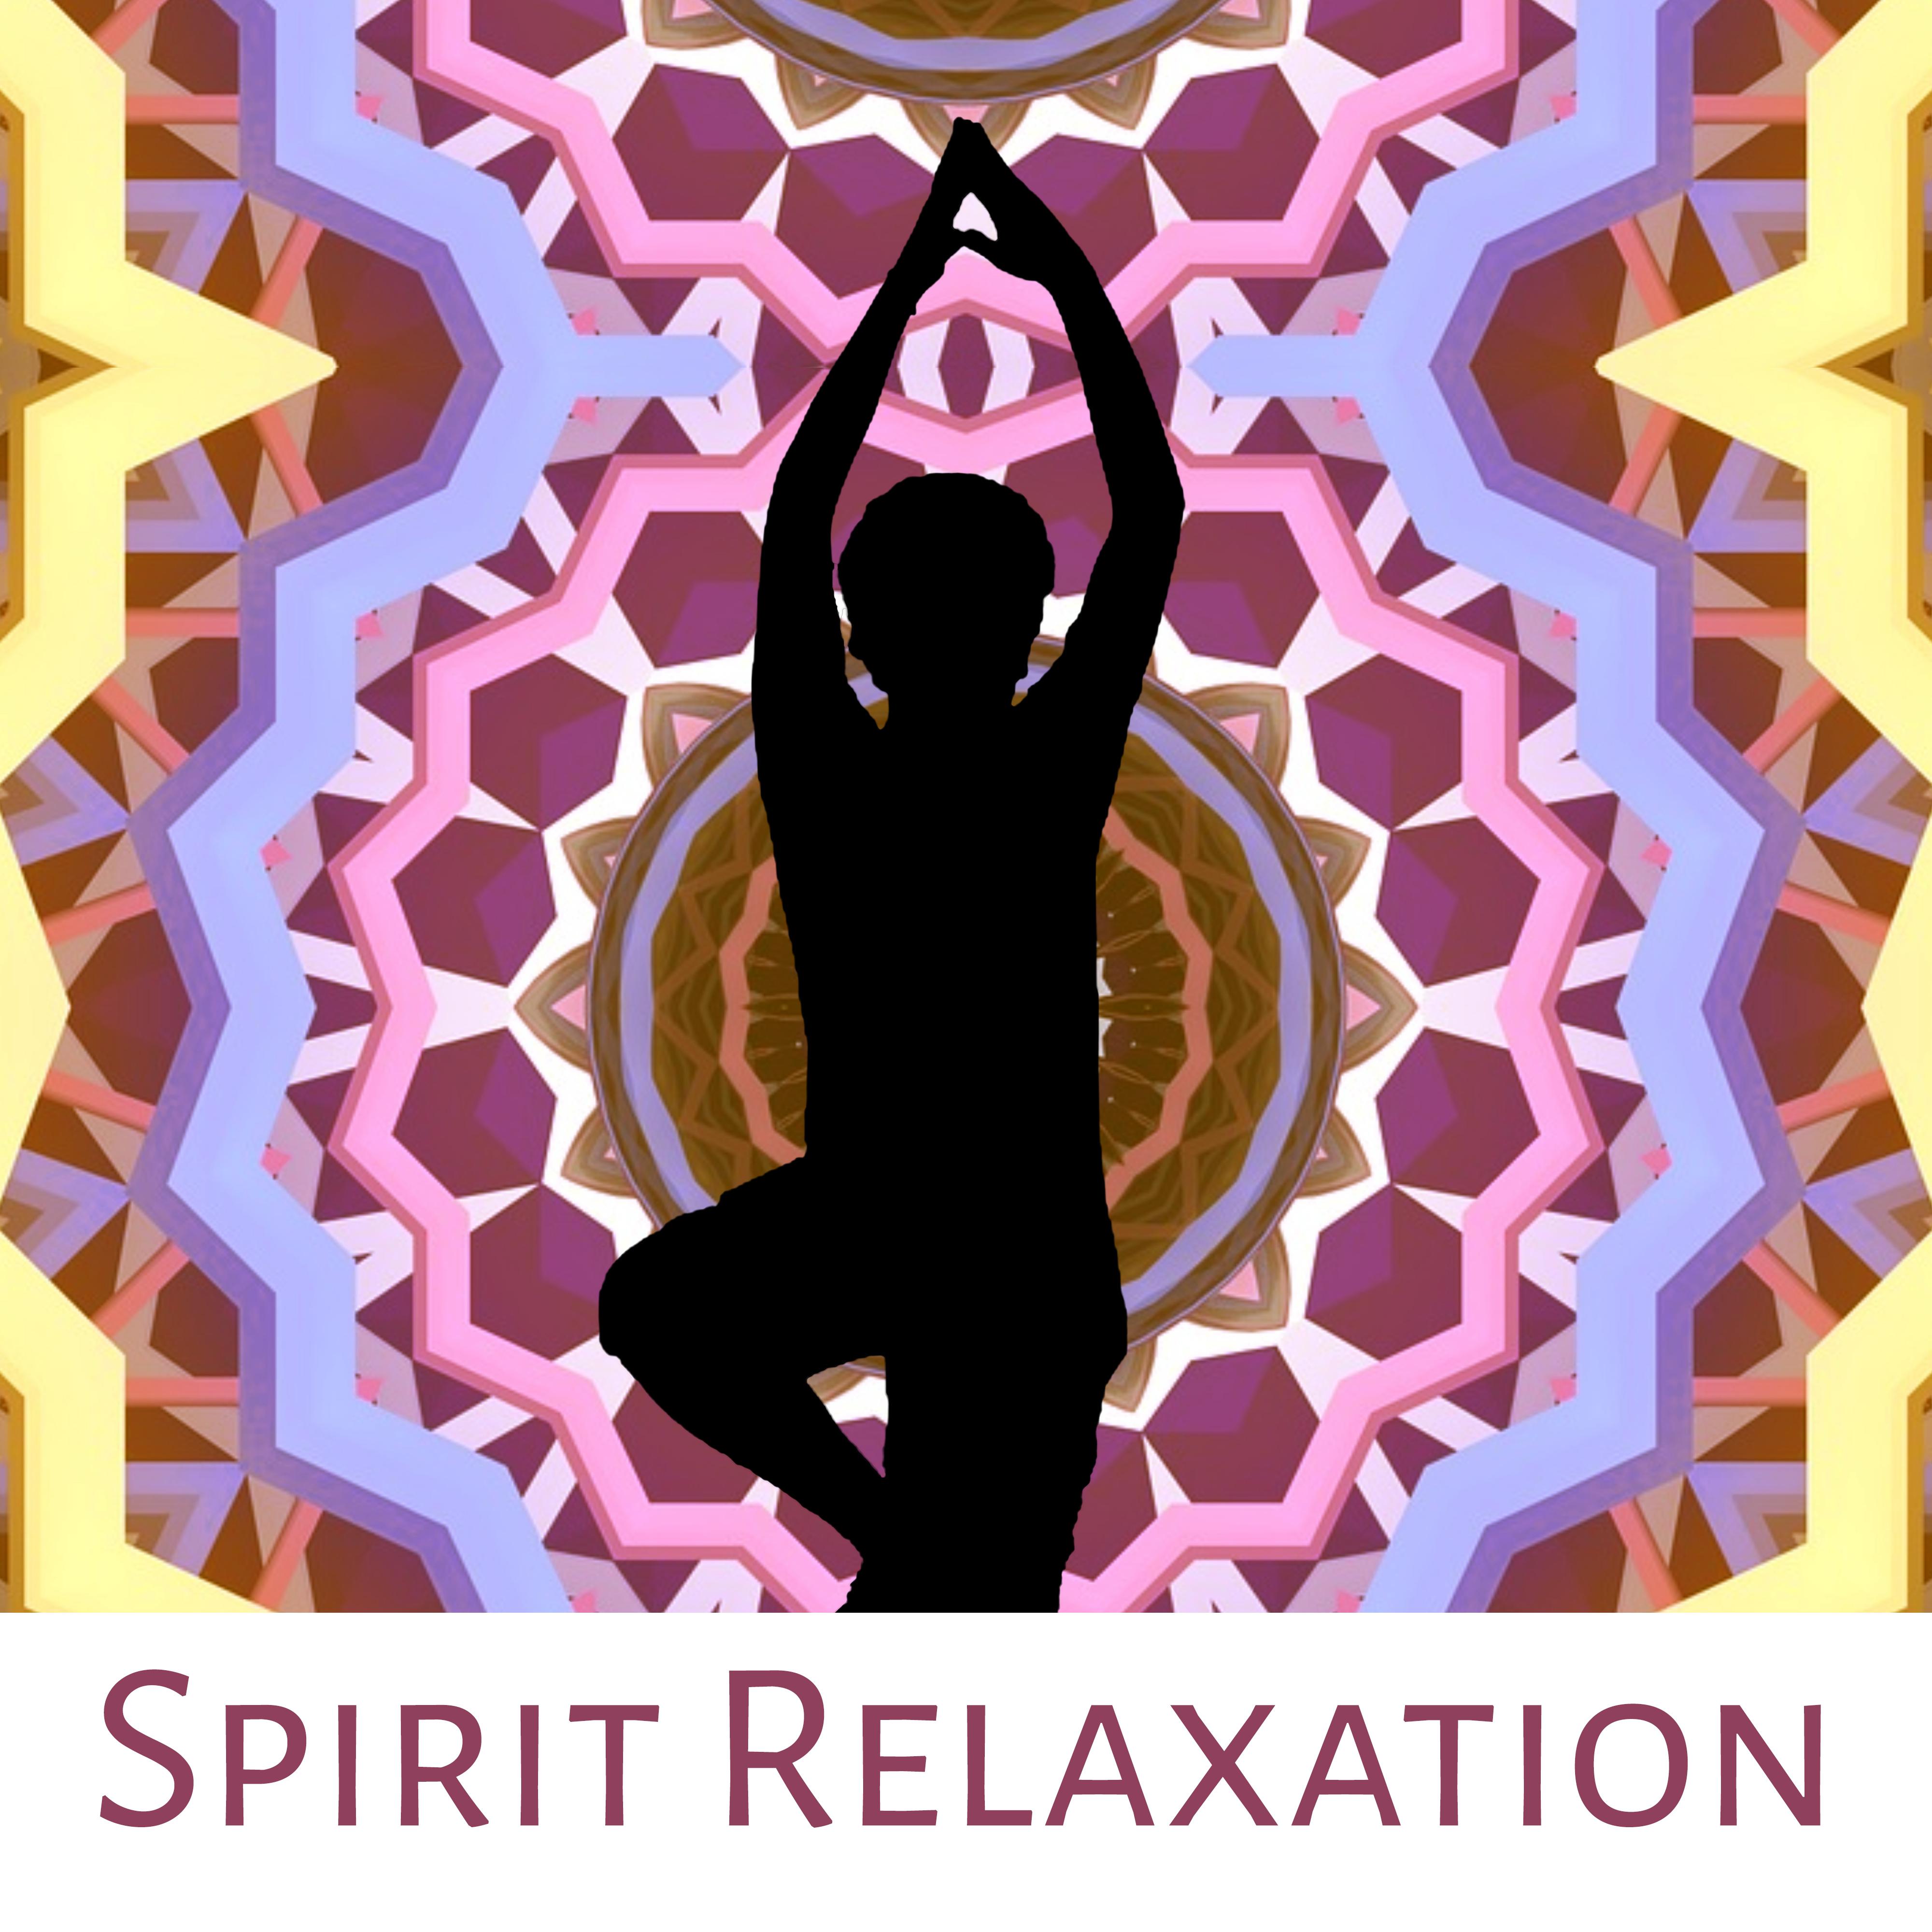 Spirit Relaxation  Meditation Calmness, Yoga Training, Spirit Journey, Inner Peace